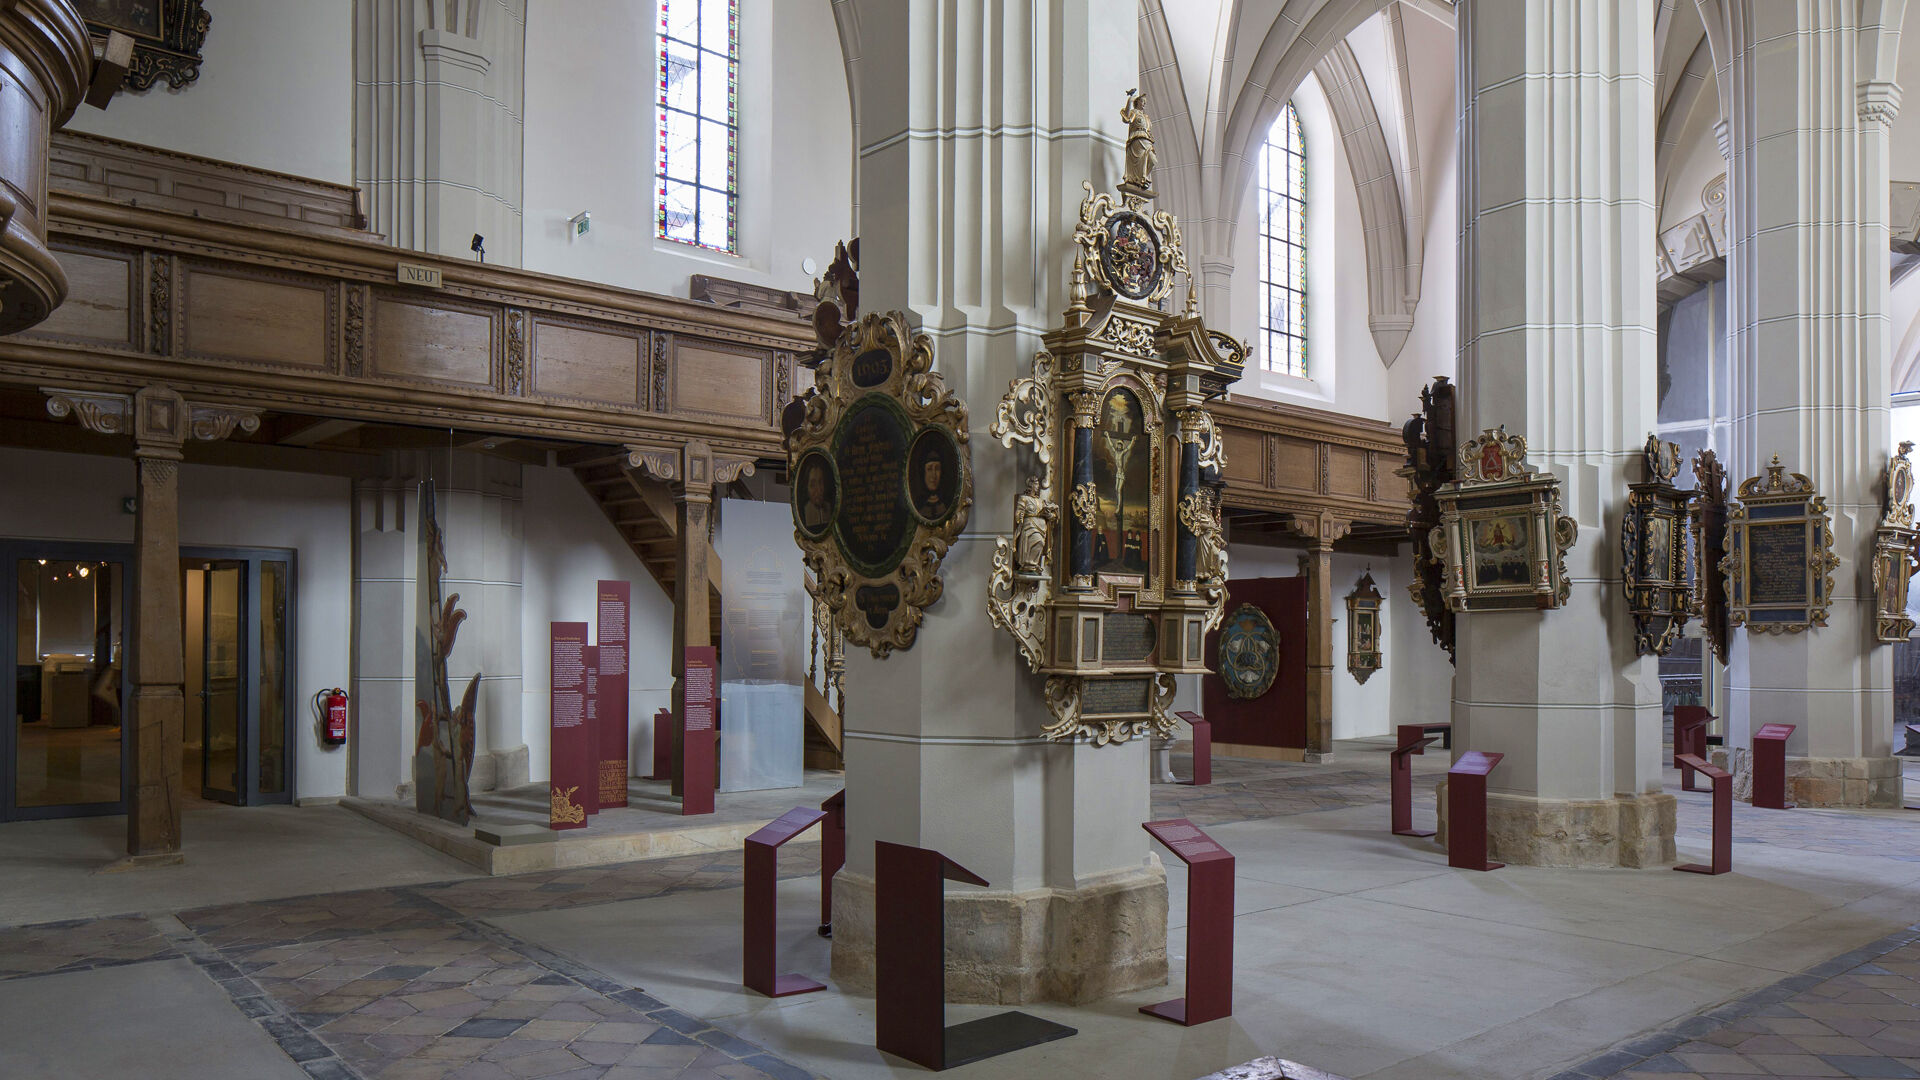 Blick in die Klosterkirche mit Epitaphienschatz 
© Städtische Museen Zittau - Jürgen Matschie